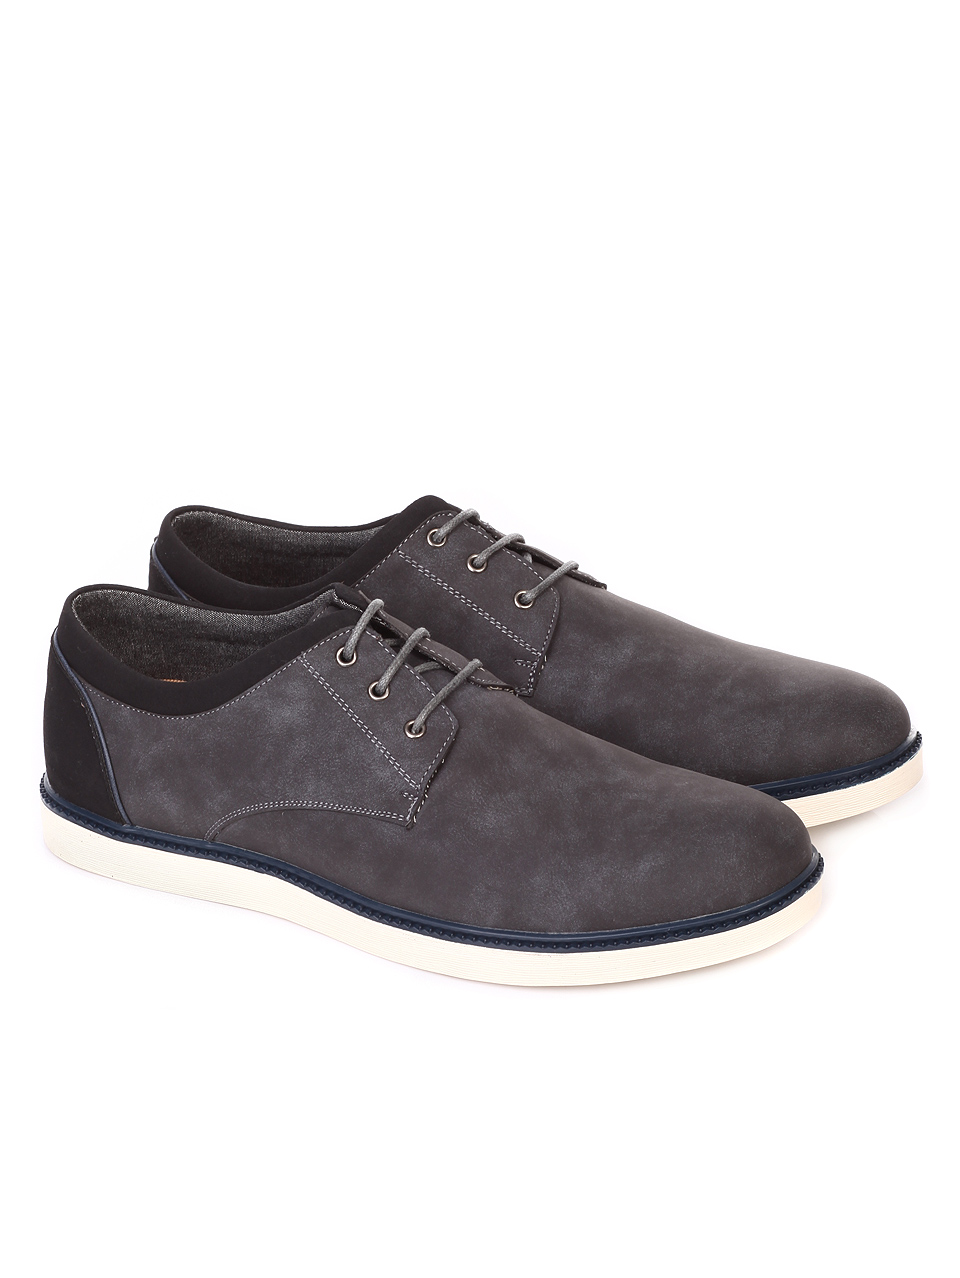 Ежедневни мъжки обувки в сиво 7N-19081 grey